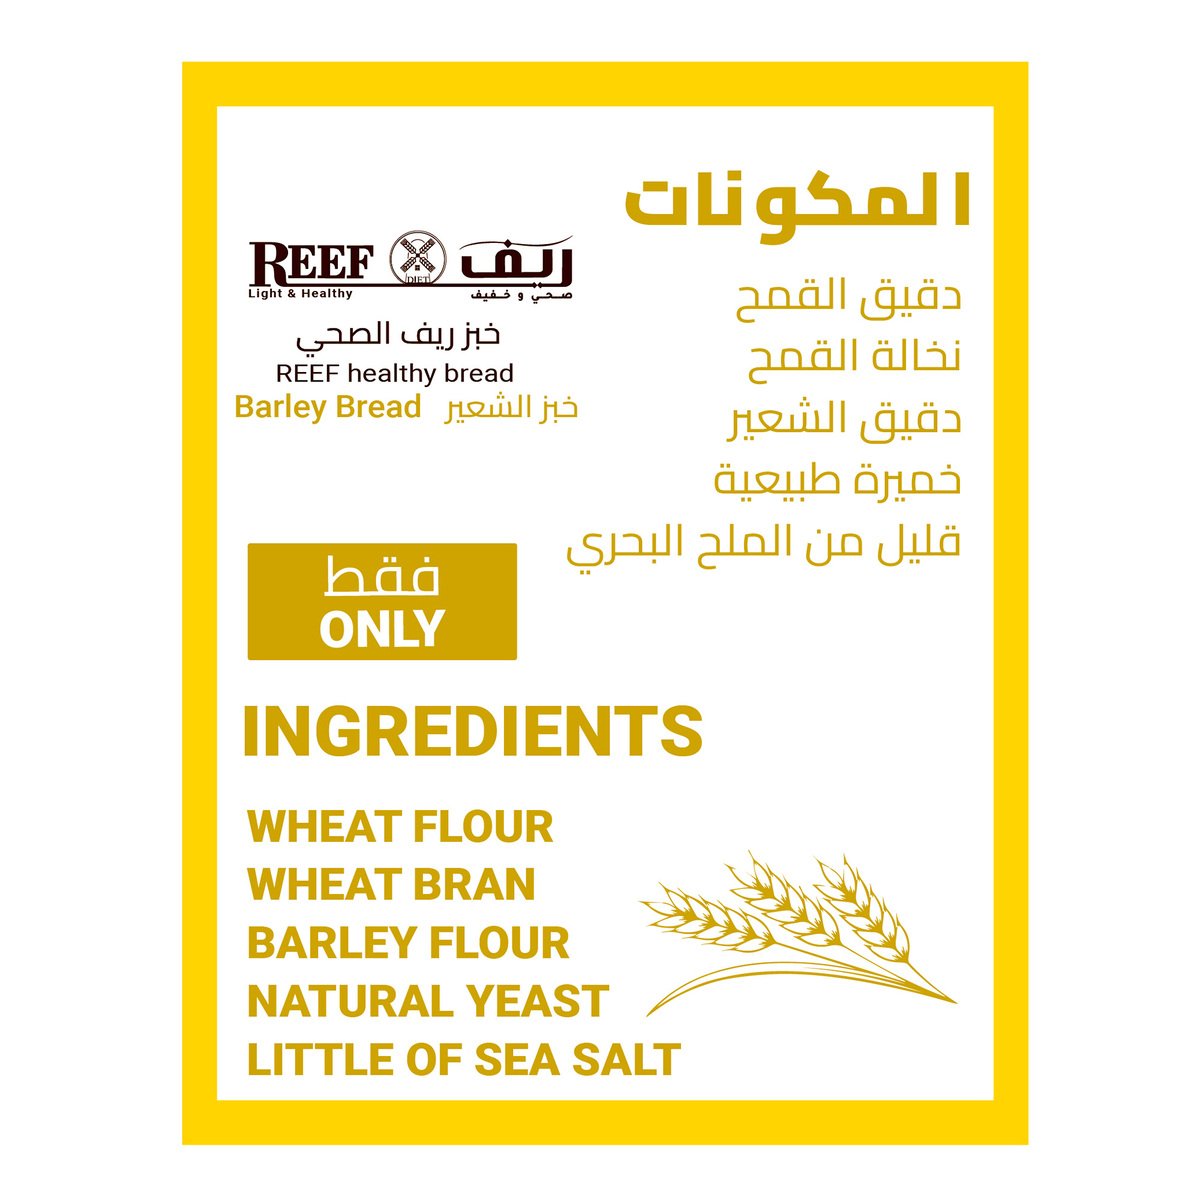 Reef Light & Healthy Barley Bread No Added Sugar 270 g